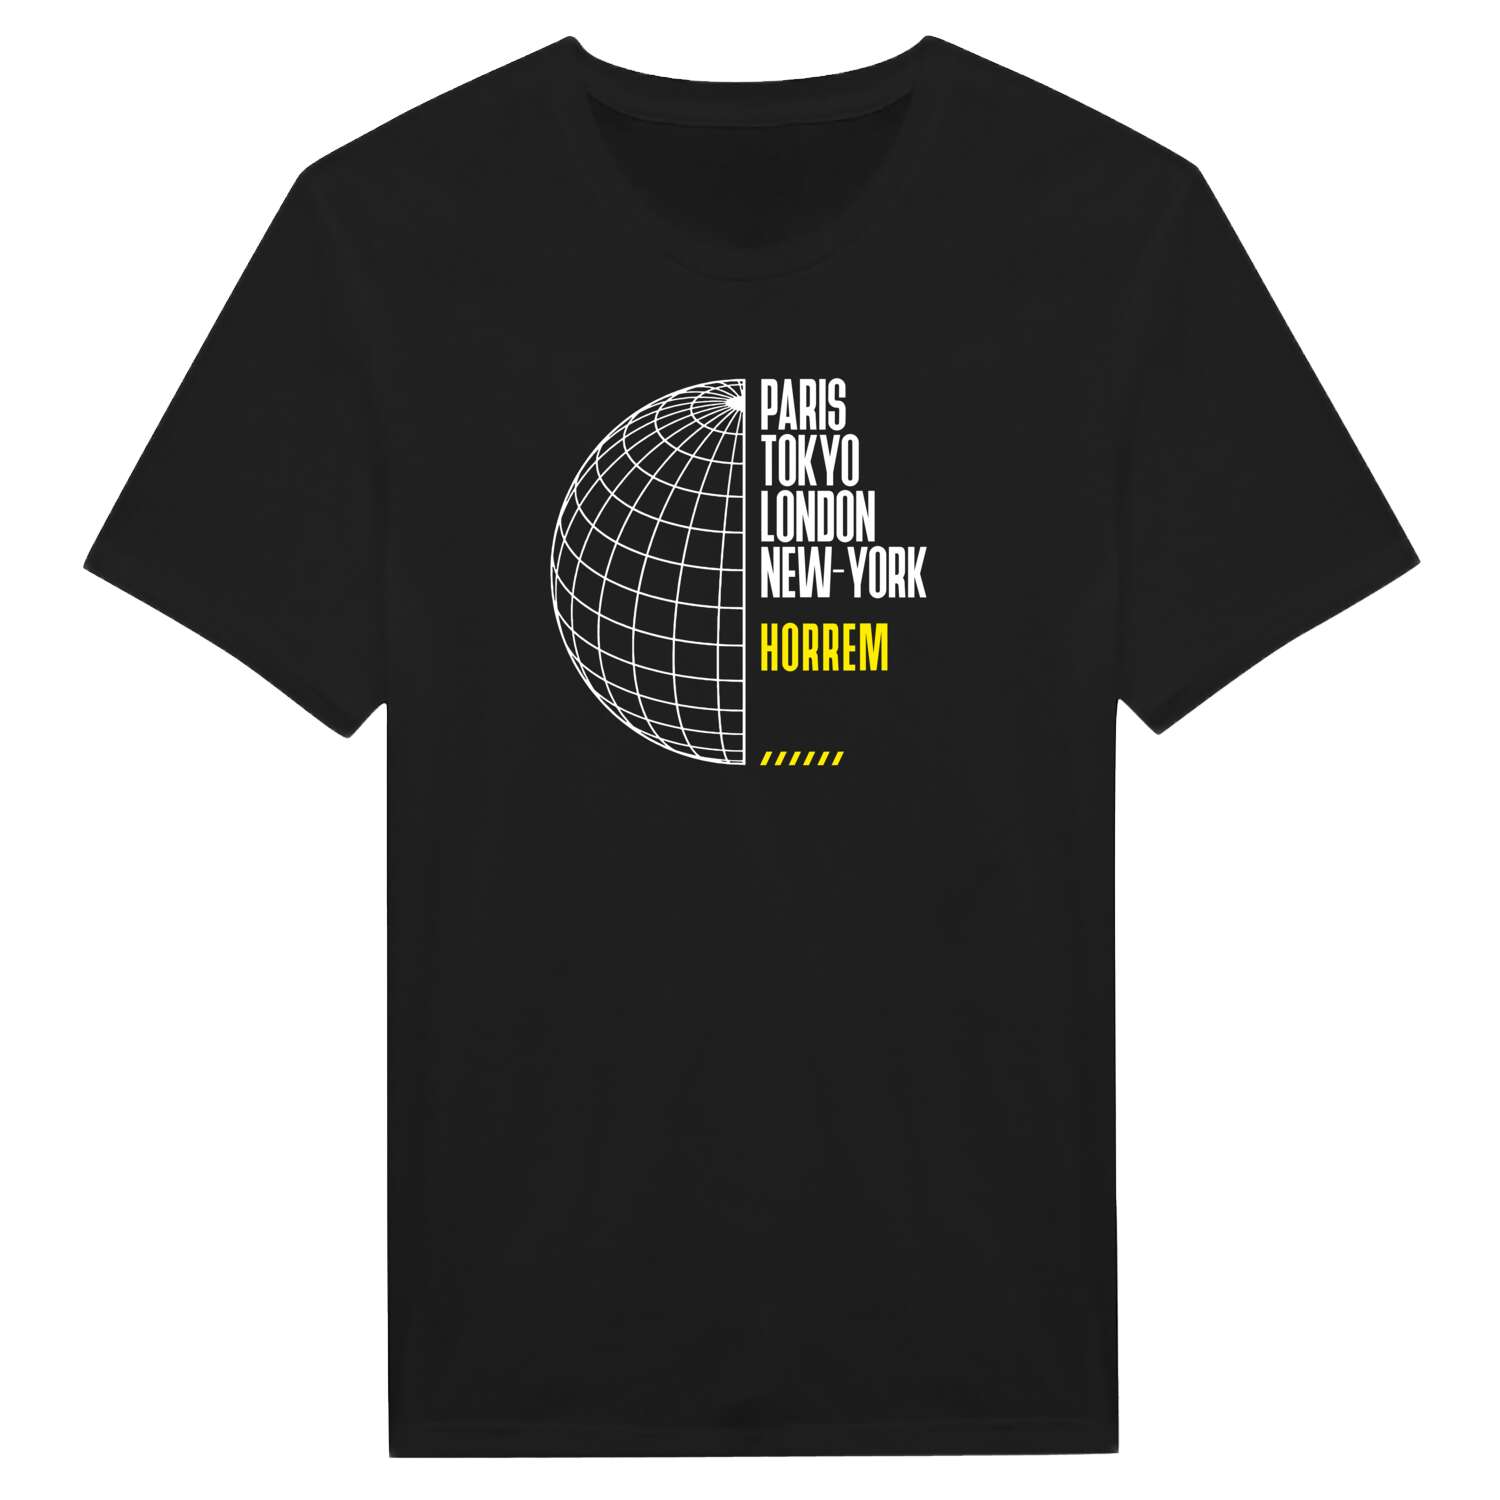 Horrem T-Shirt »Paris Tokyo London«